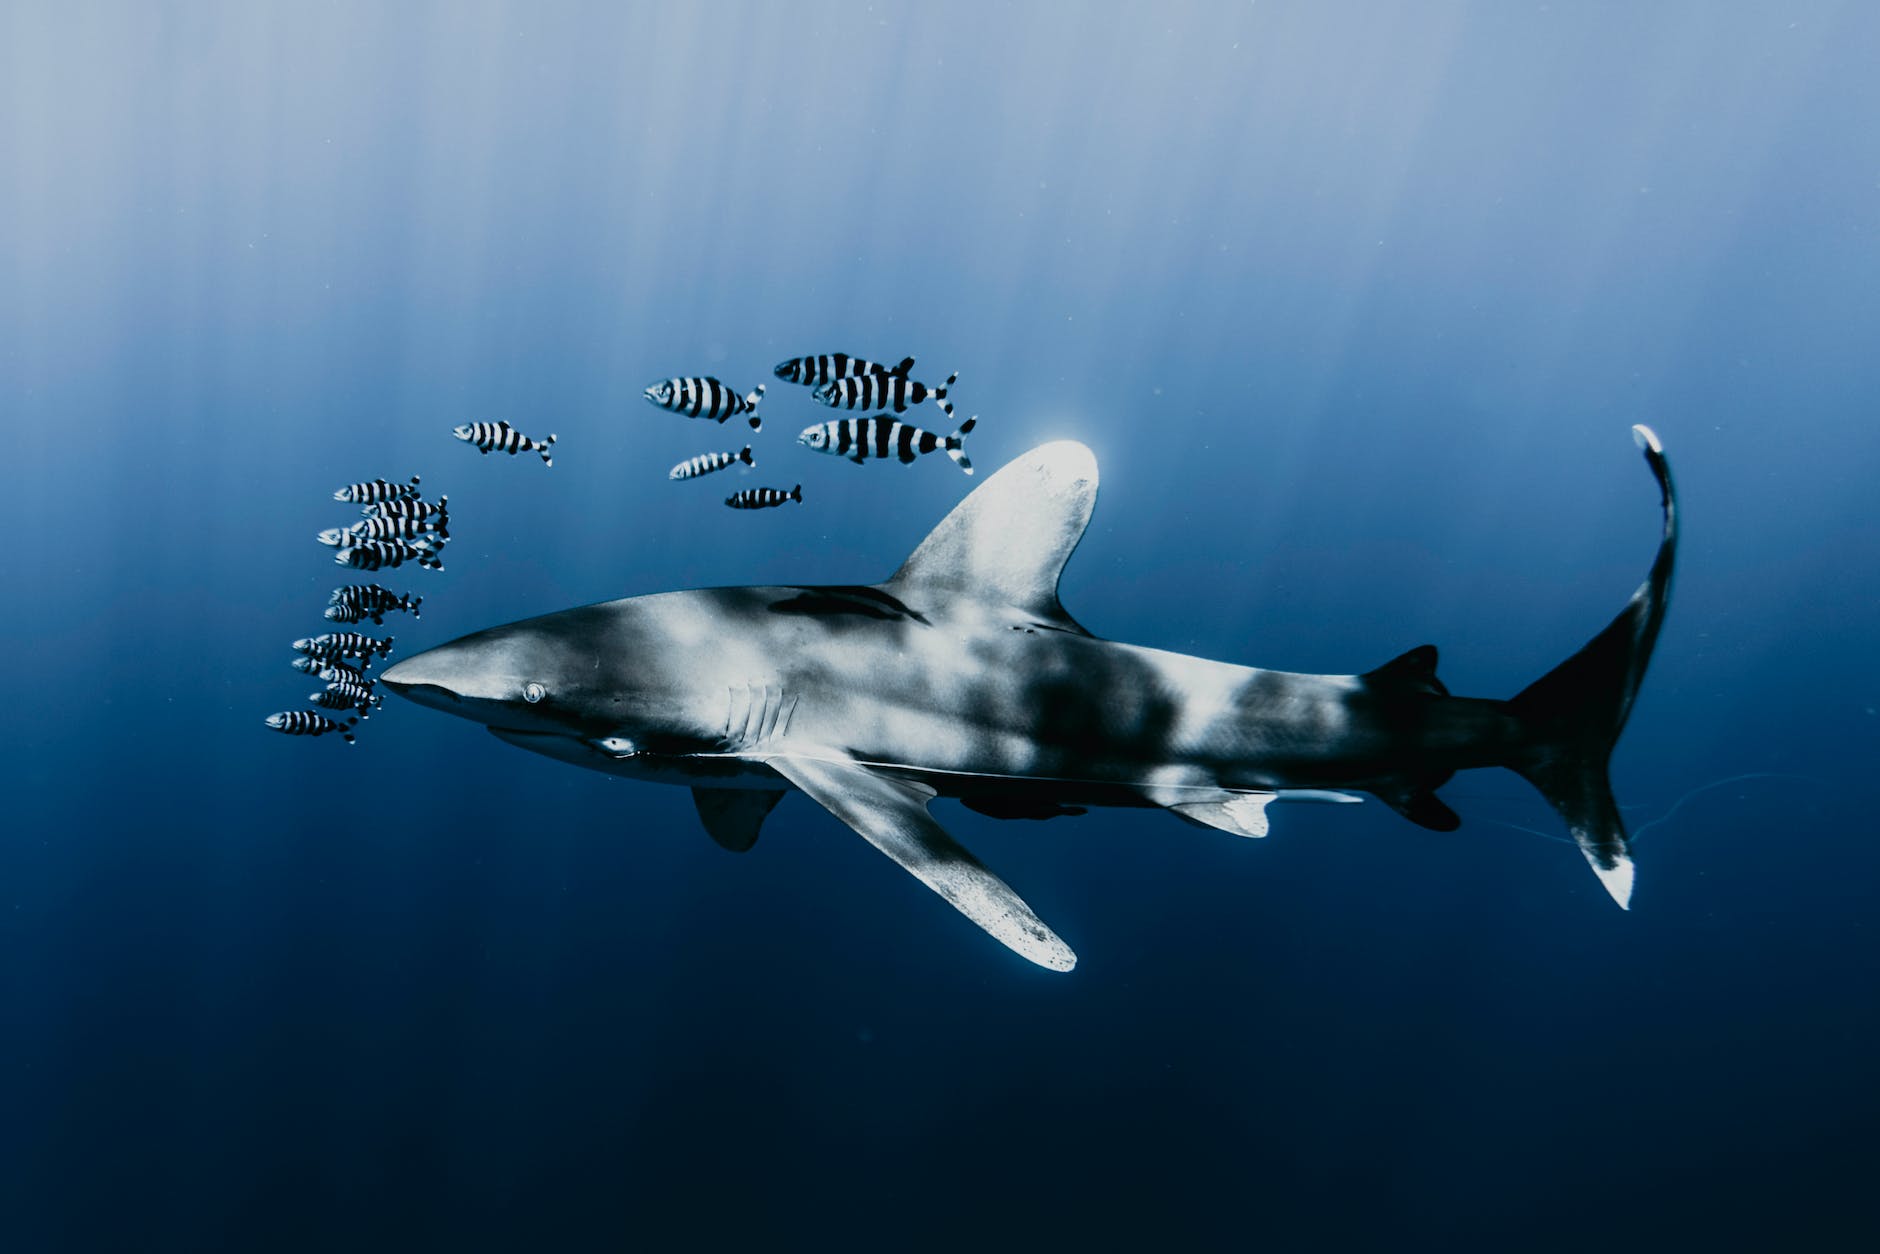 Il longimanus è uno squalo iconico nel Mar Rosso: i subacquei fanno speciali immersioni per vederlo. È considerato relativamente curioso e aggressivo.